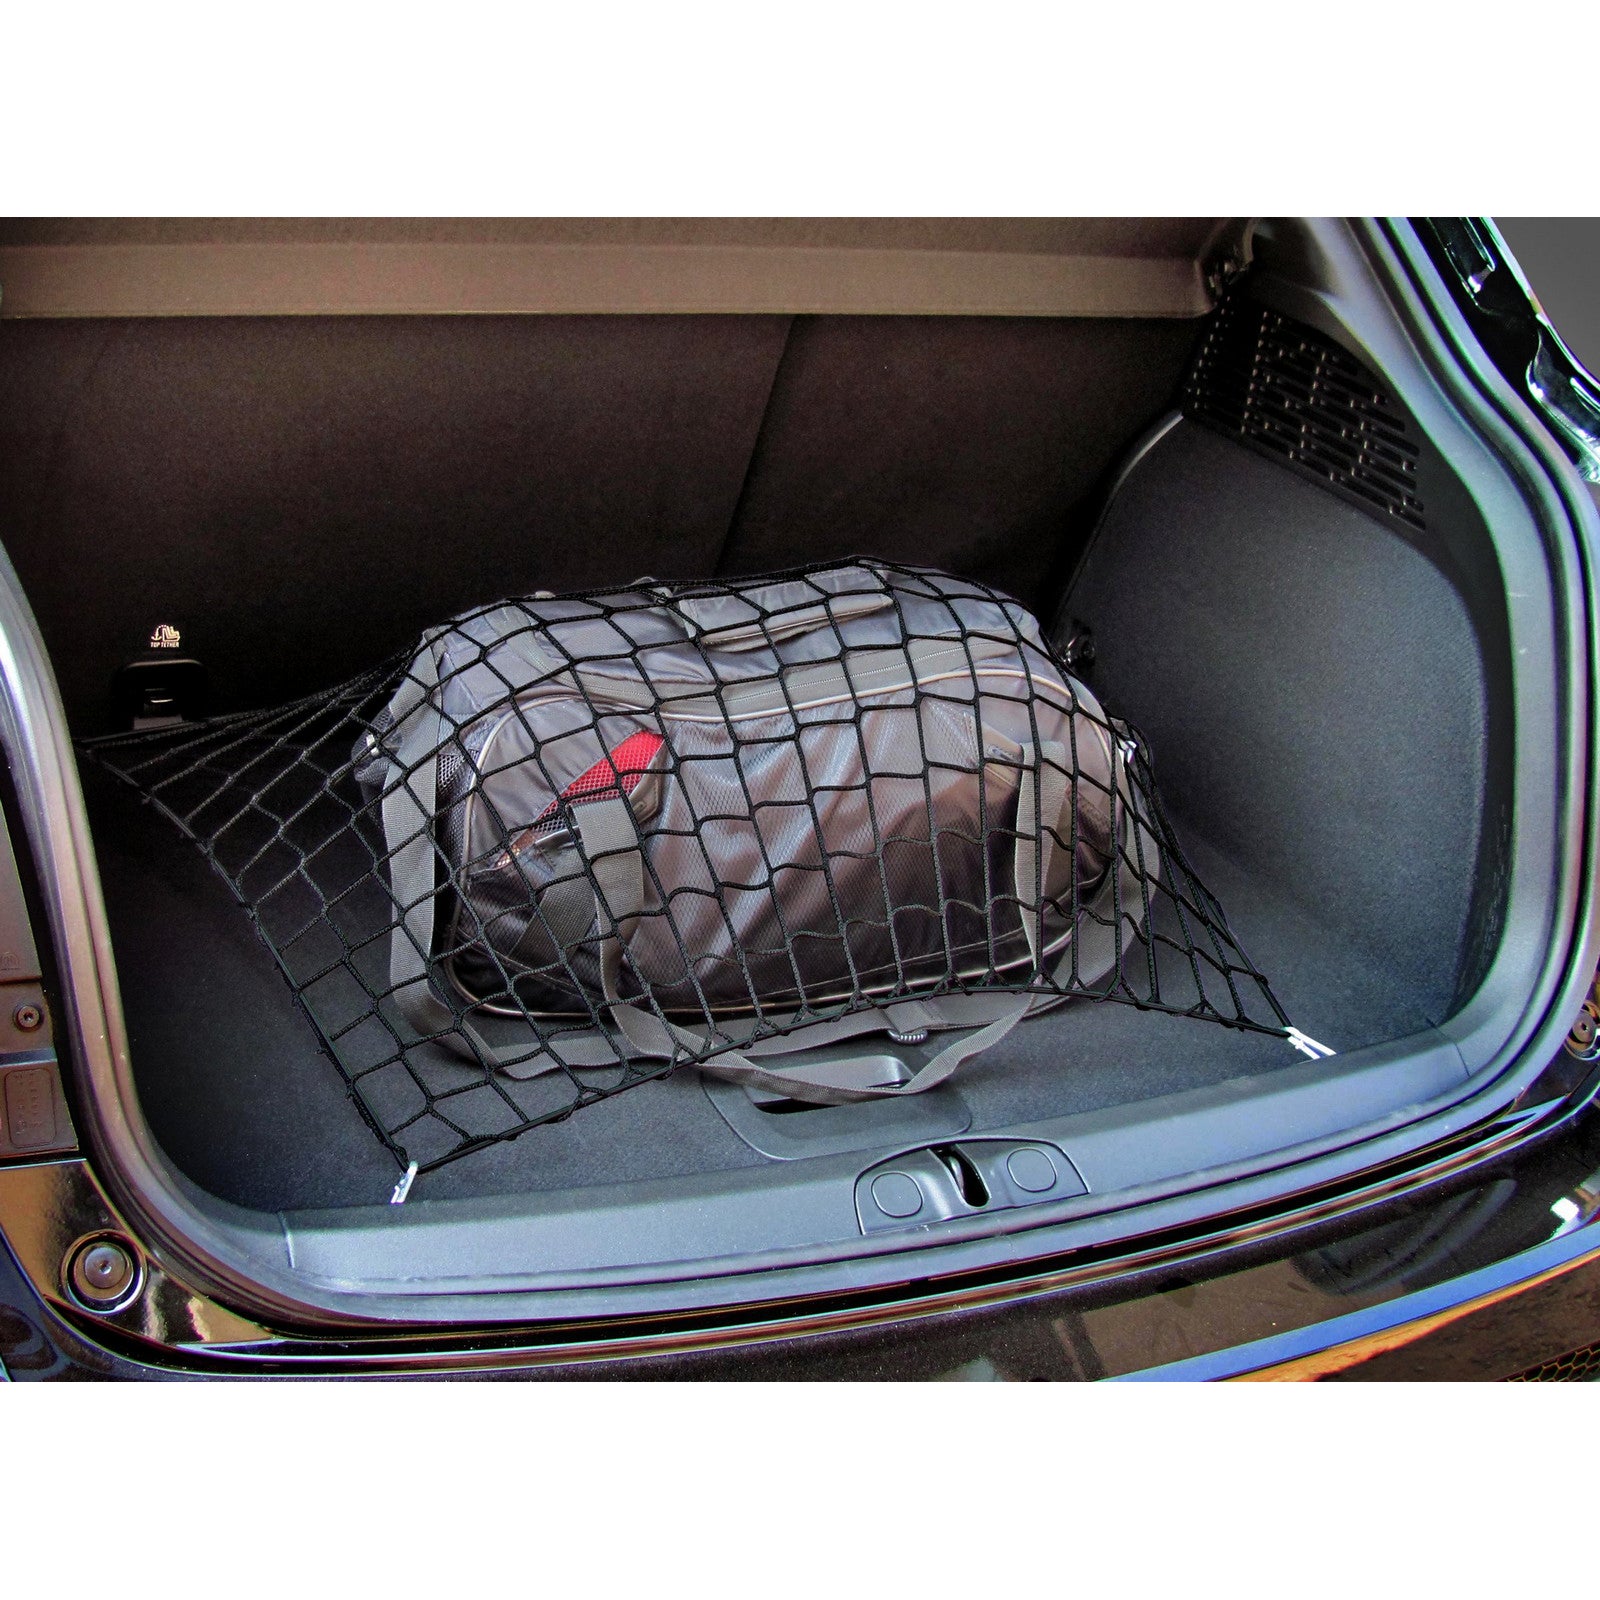 Autosiatki Kofferraumbodennetz Netz Gepäcknetz für Ford S-Max 2006